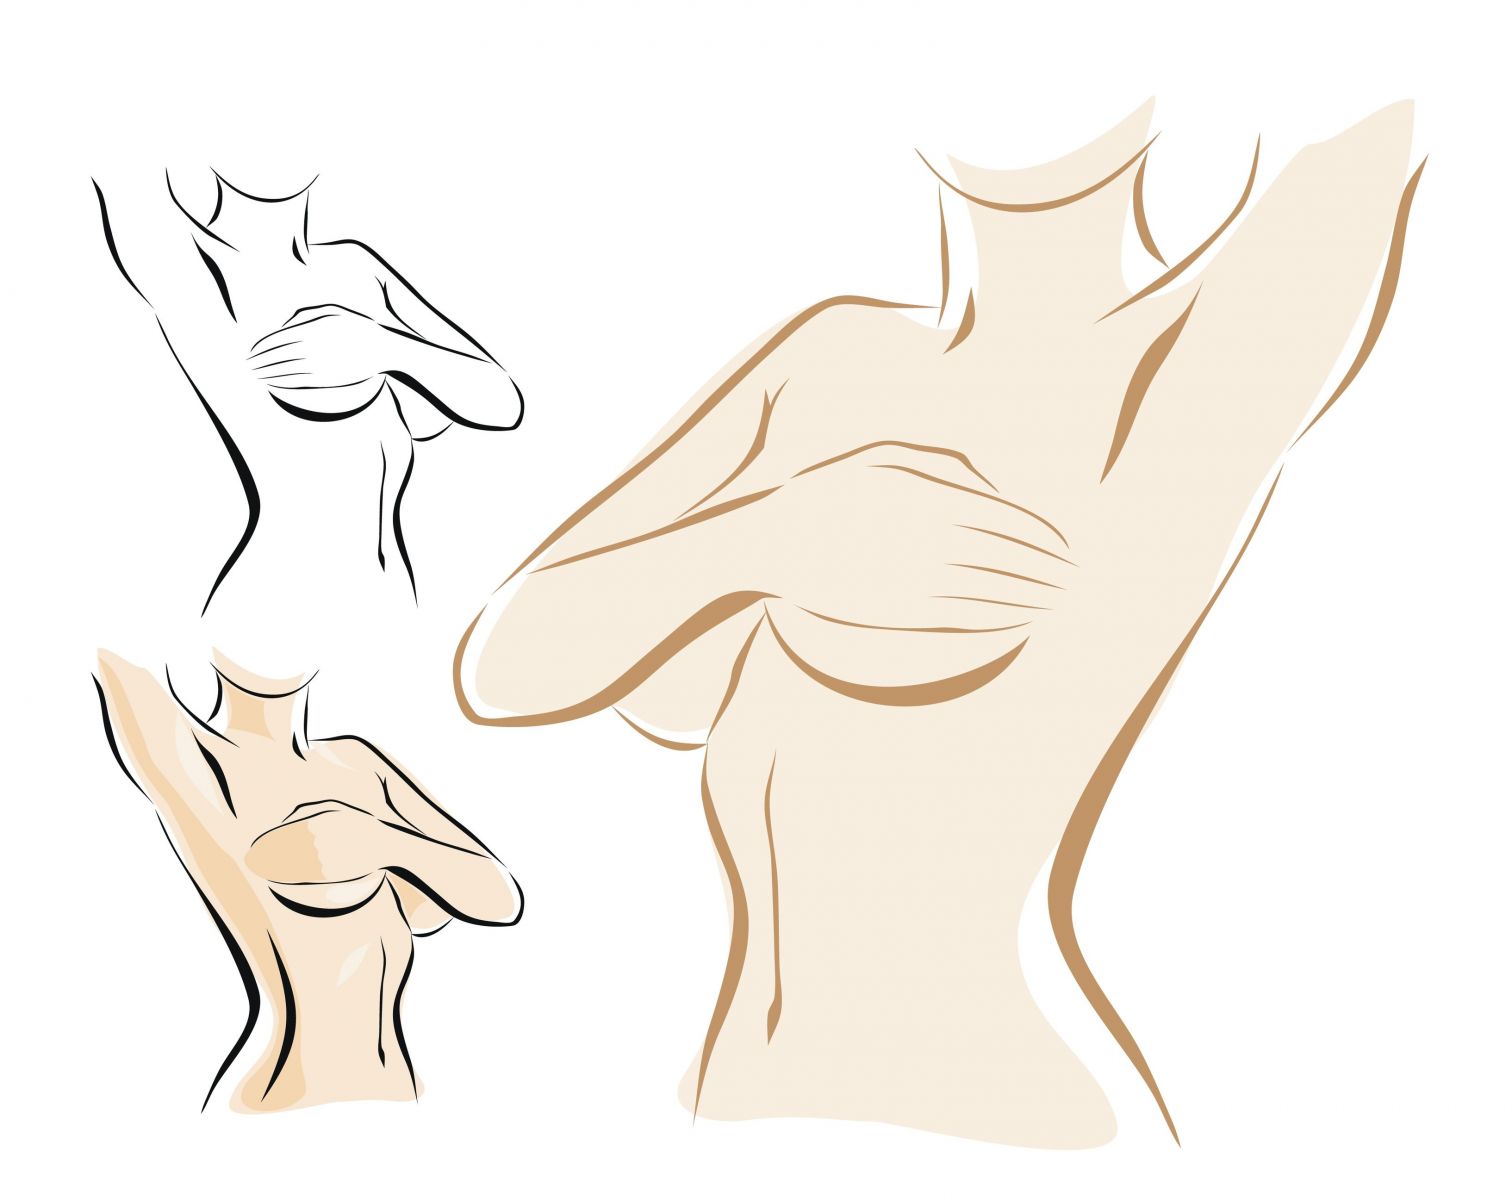 Аппетитная тела показывает рисунки на груди и руках